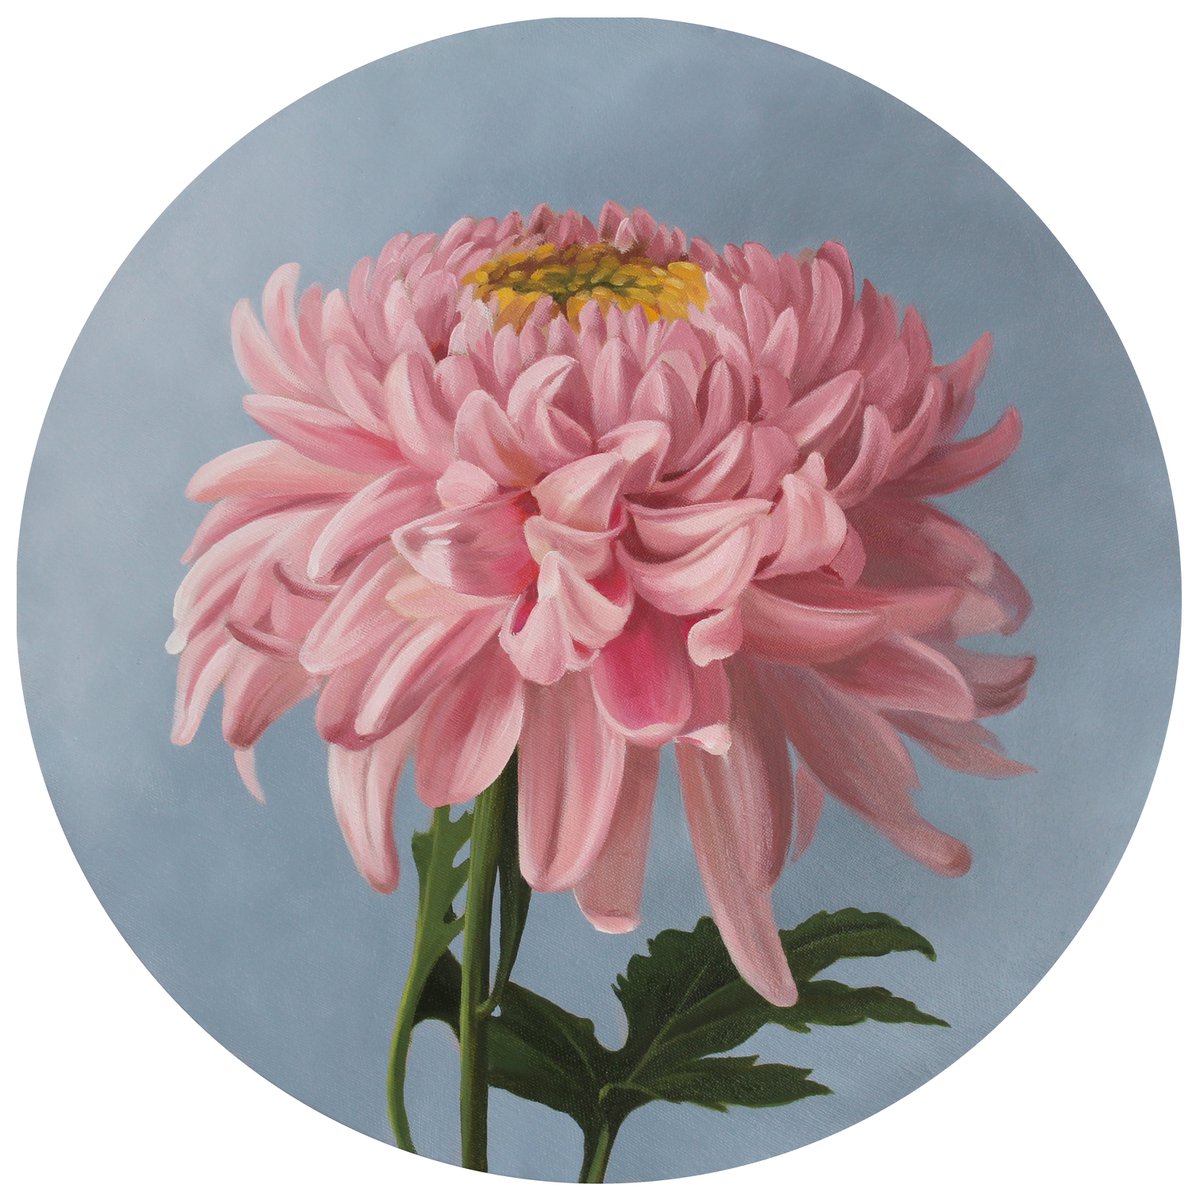 Chrysanthemum in pink by Natalia Zhukova